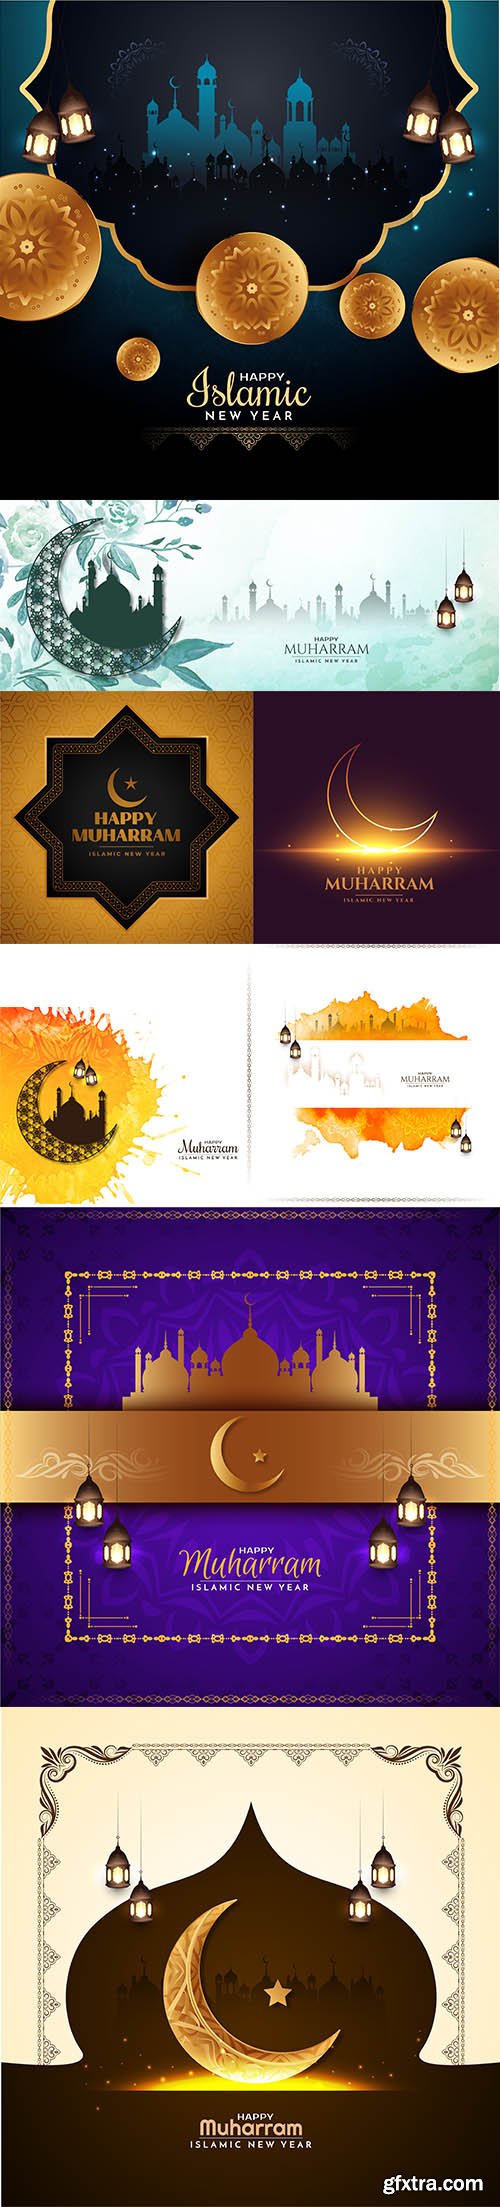 Happy muharram islamic new year religious greeting banner